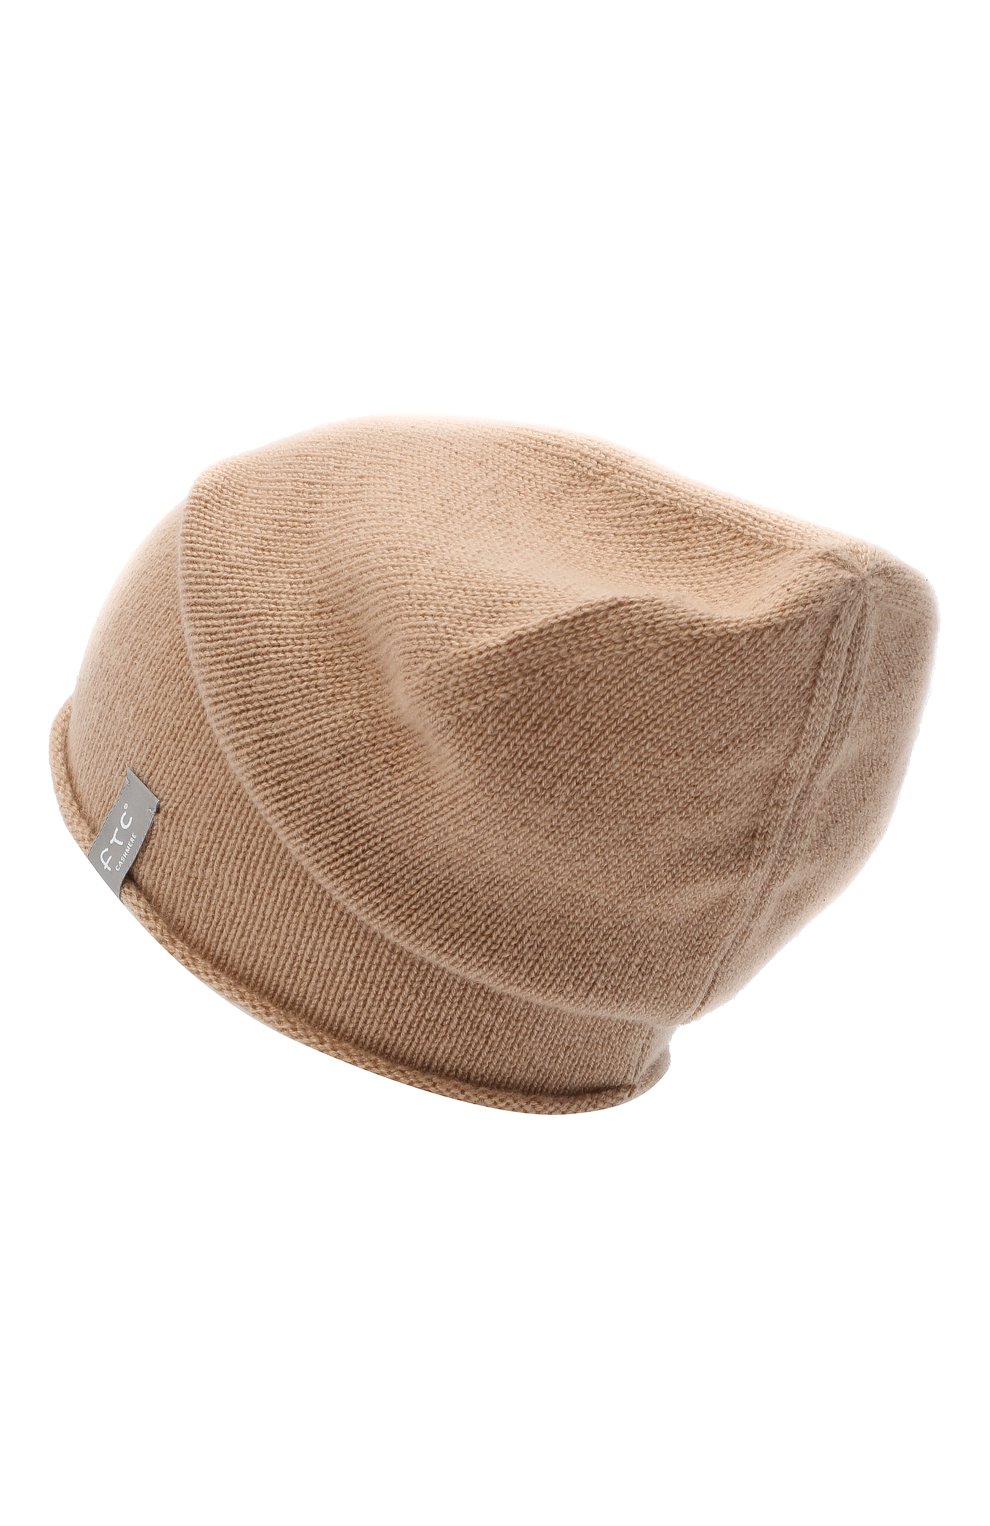 Женская кашемировая шапка FTC бежевого цвета, арт. 800-0970 | Фото 2 (Материал: Текстиль, Кашемир, Шерсть)